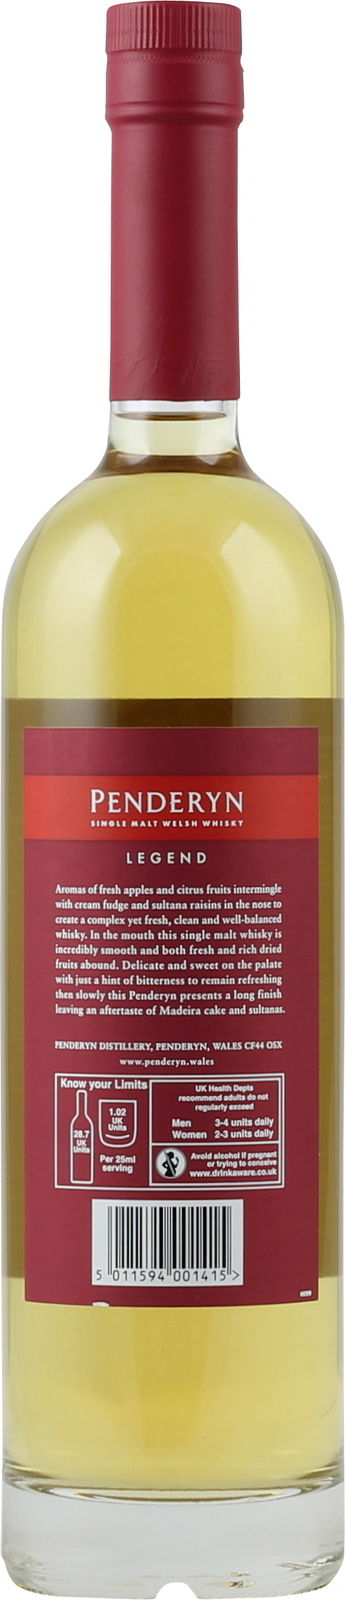 Penderyn Legend Welsh Single Malt Whiskey 0,7 Liter 41%